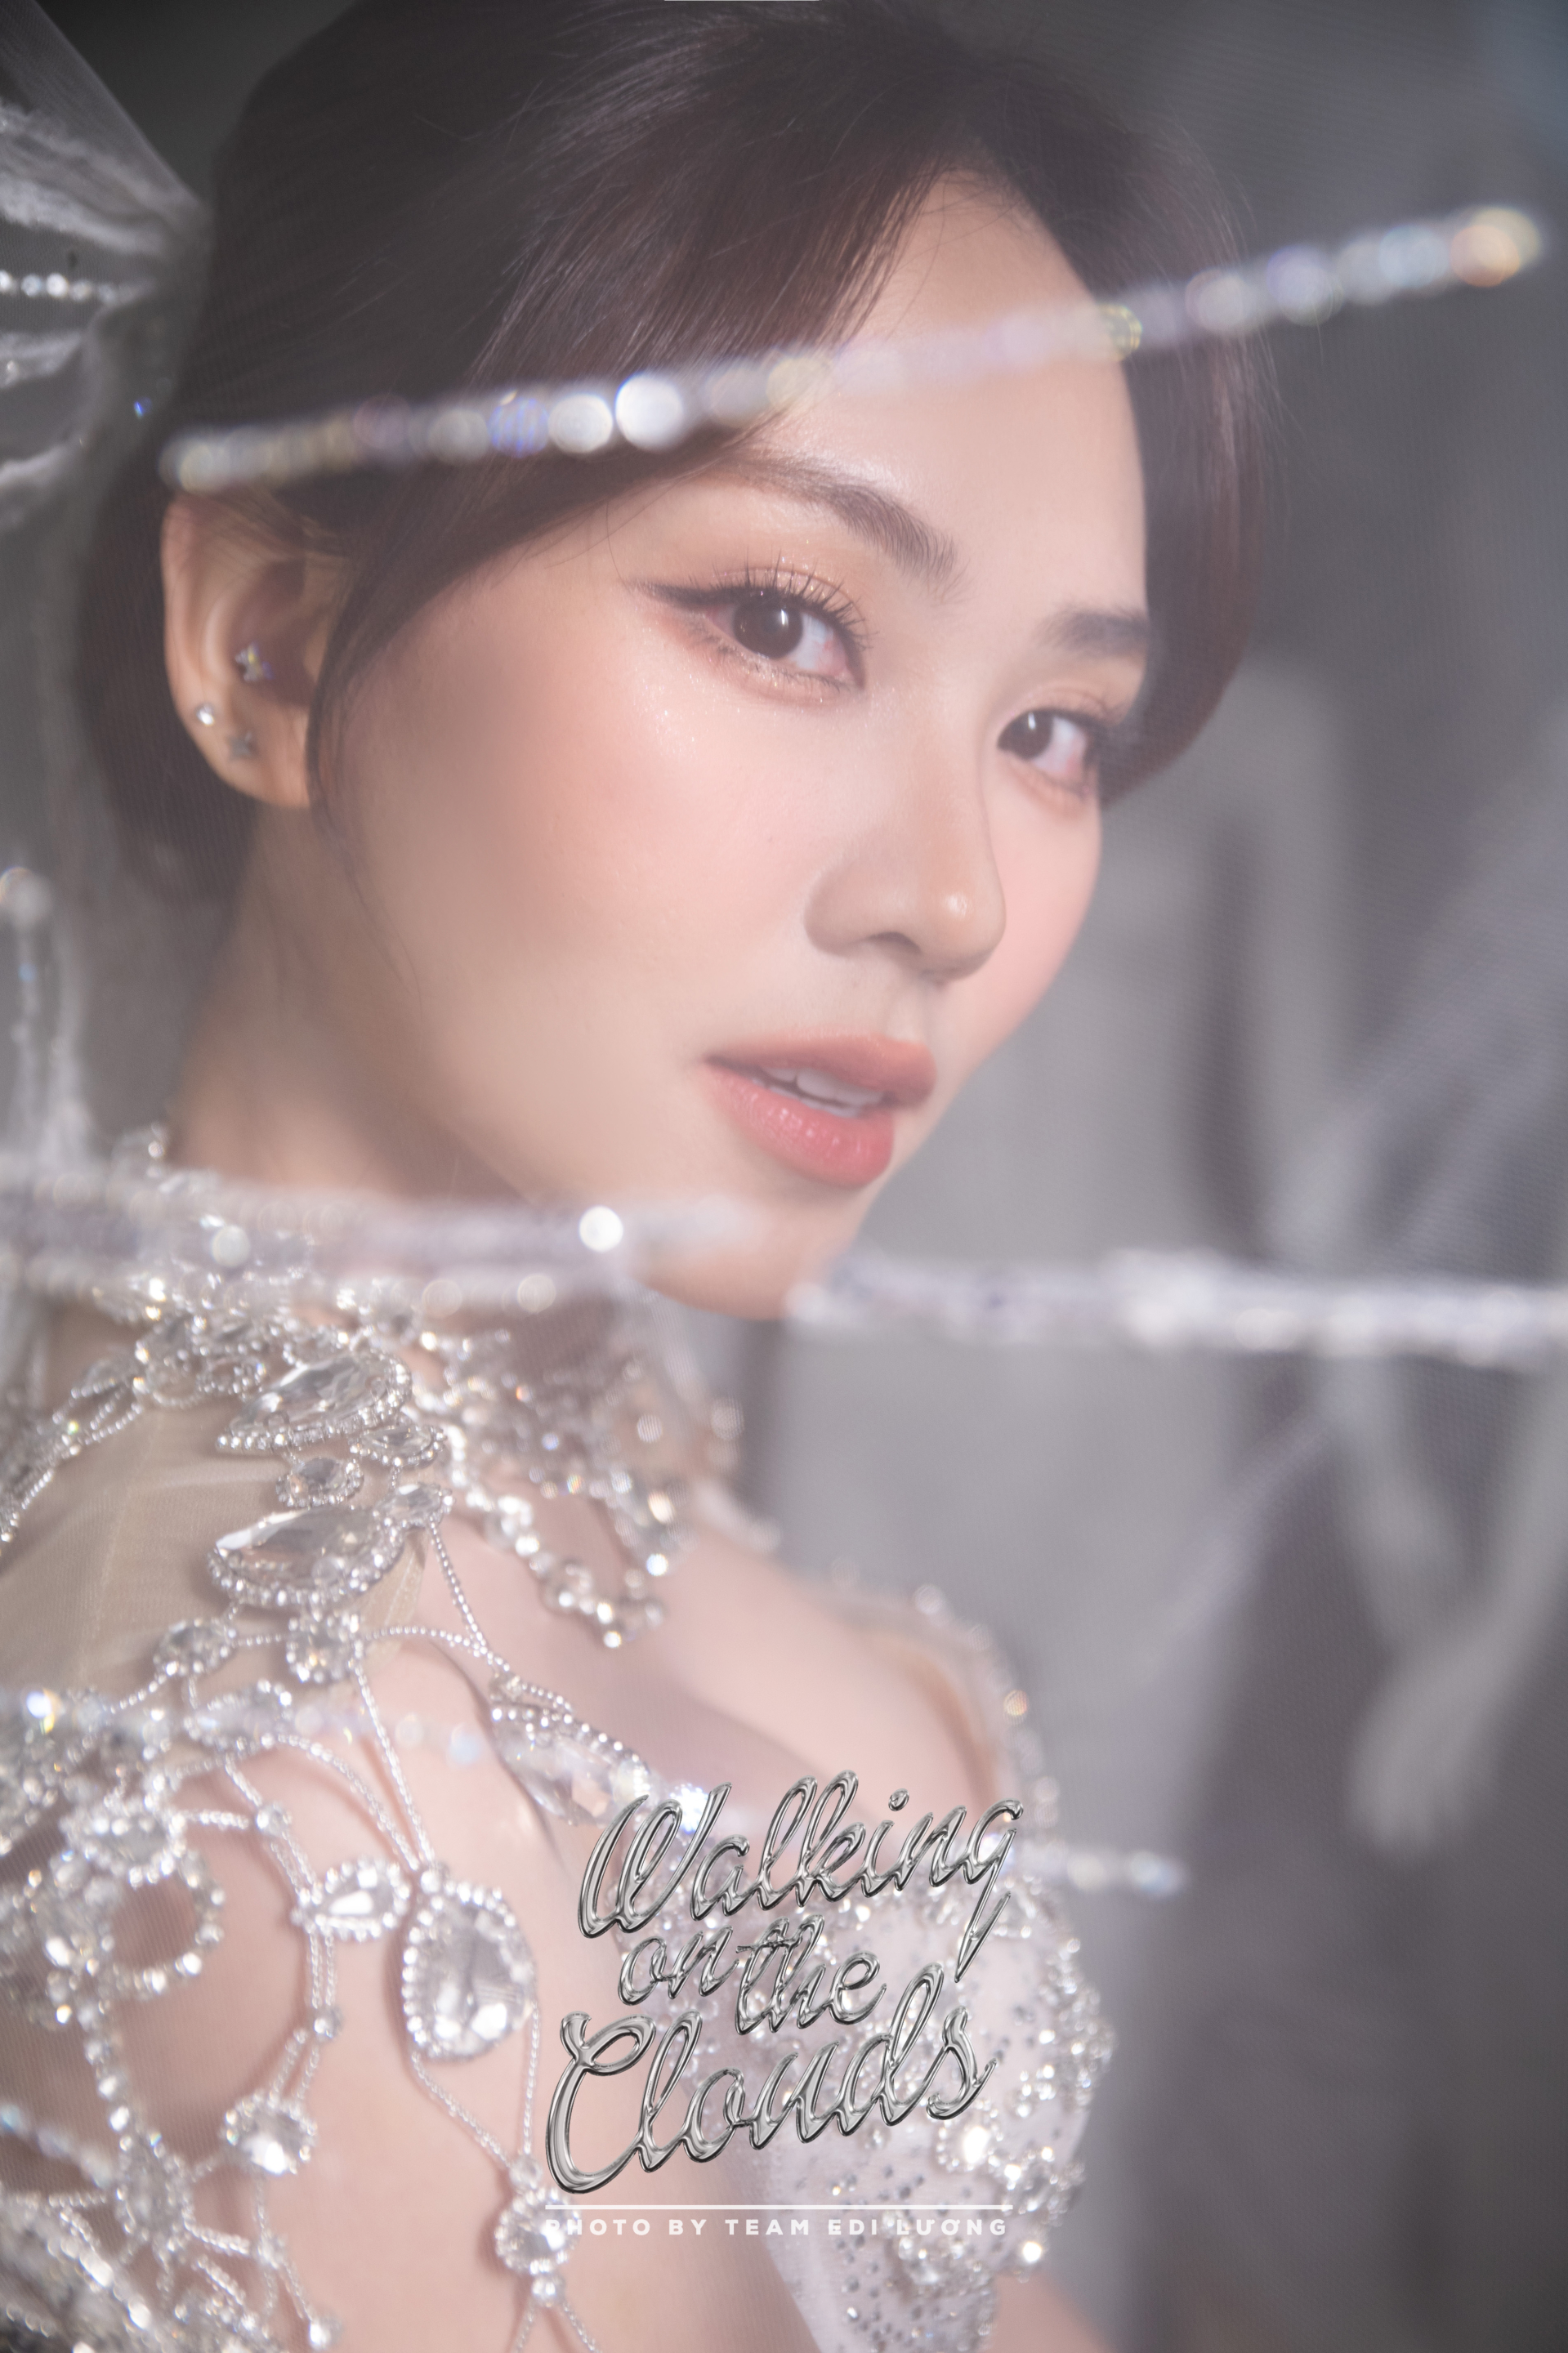 Miss World tiếp tục dời lịch, Hoa hậu Mai Phương bỗng tung loạt ảnh diện váy cưới đẹp như mơ - ảnh 3